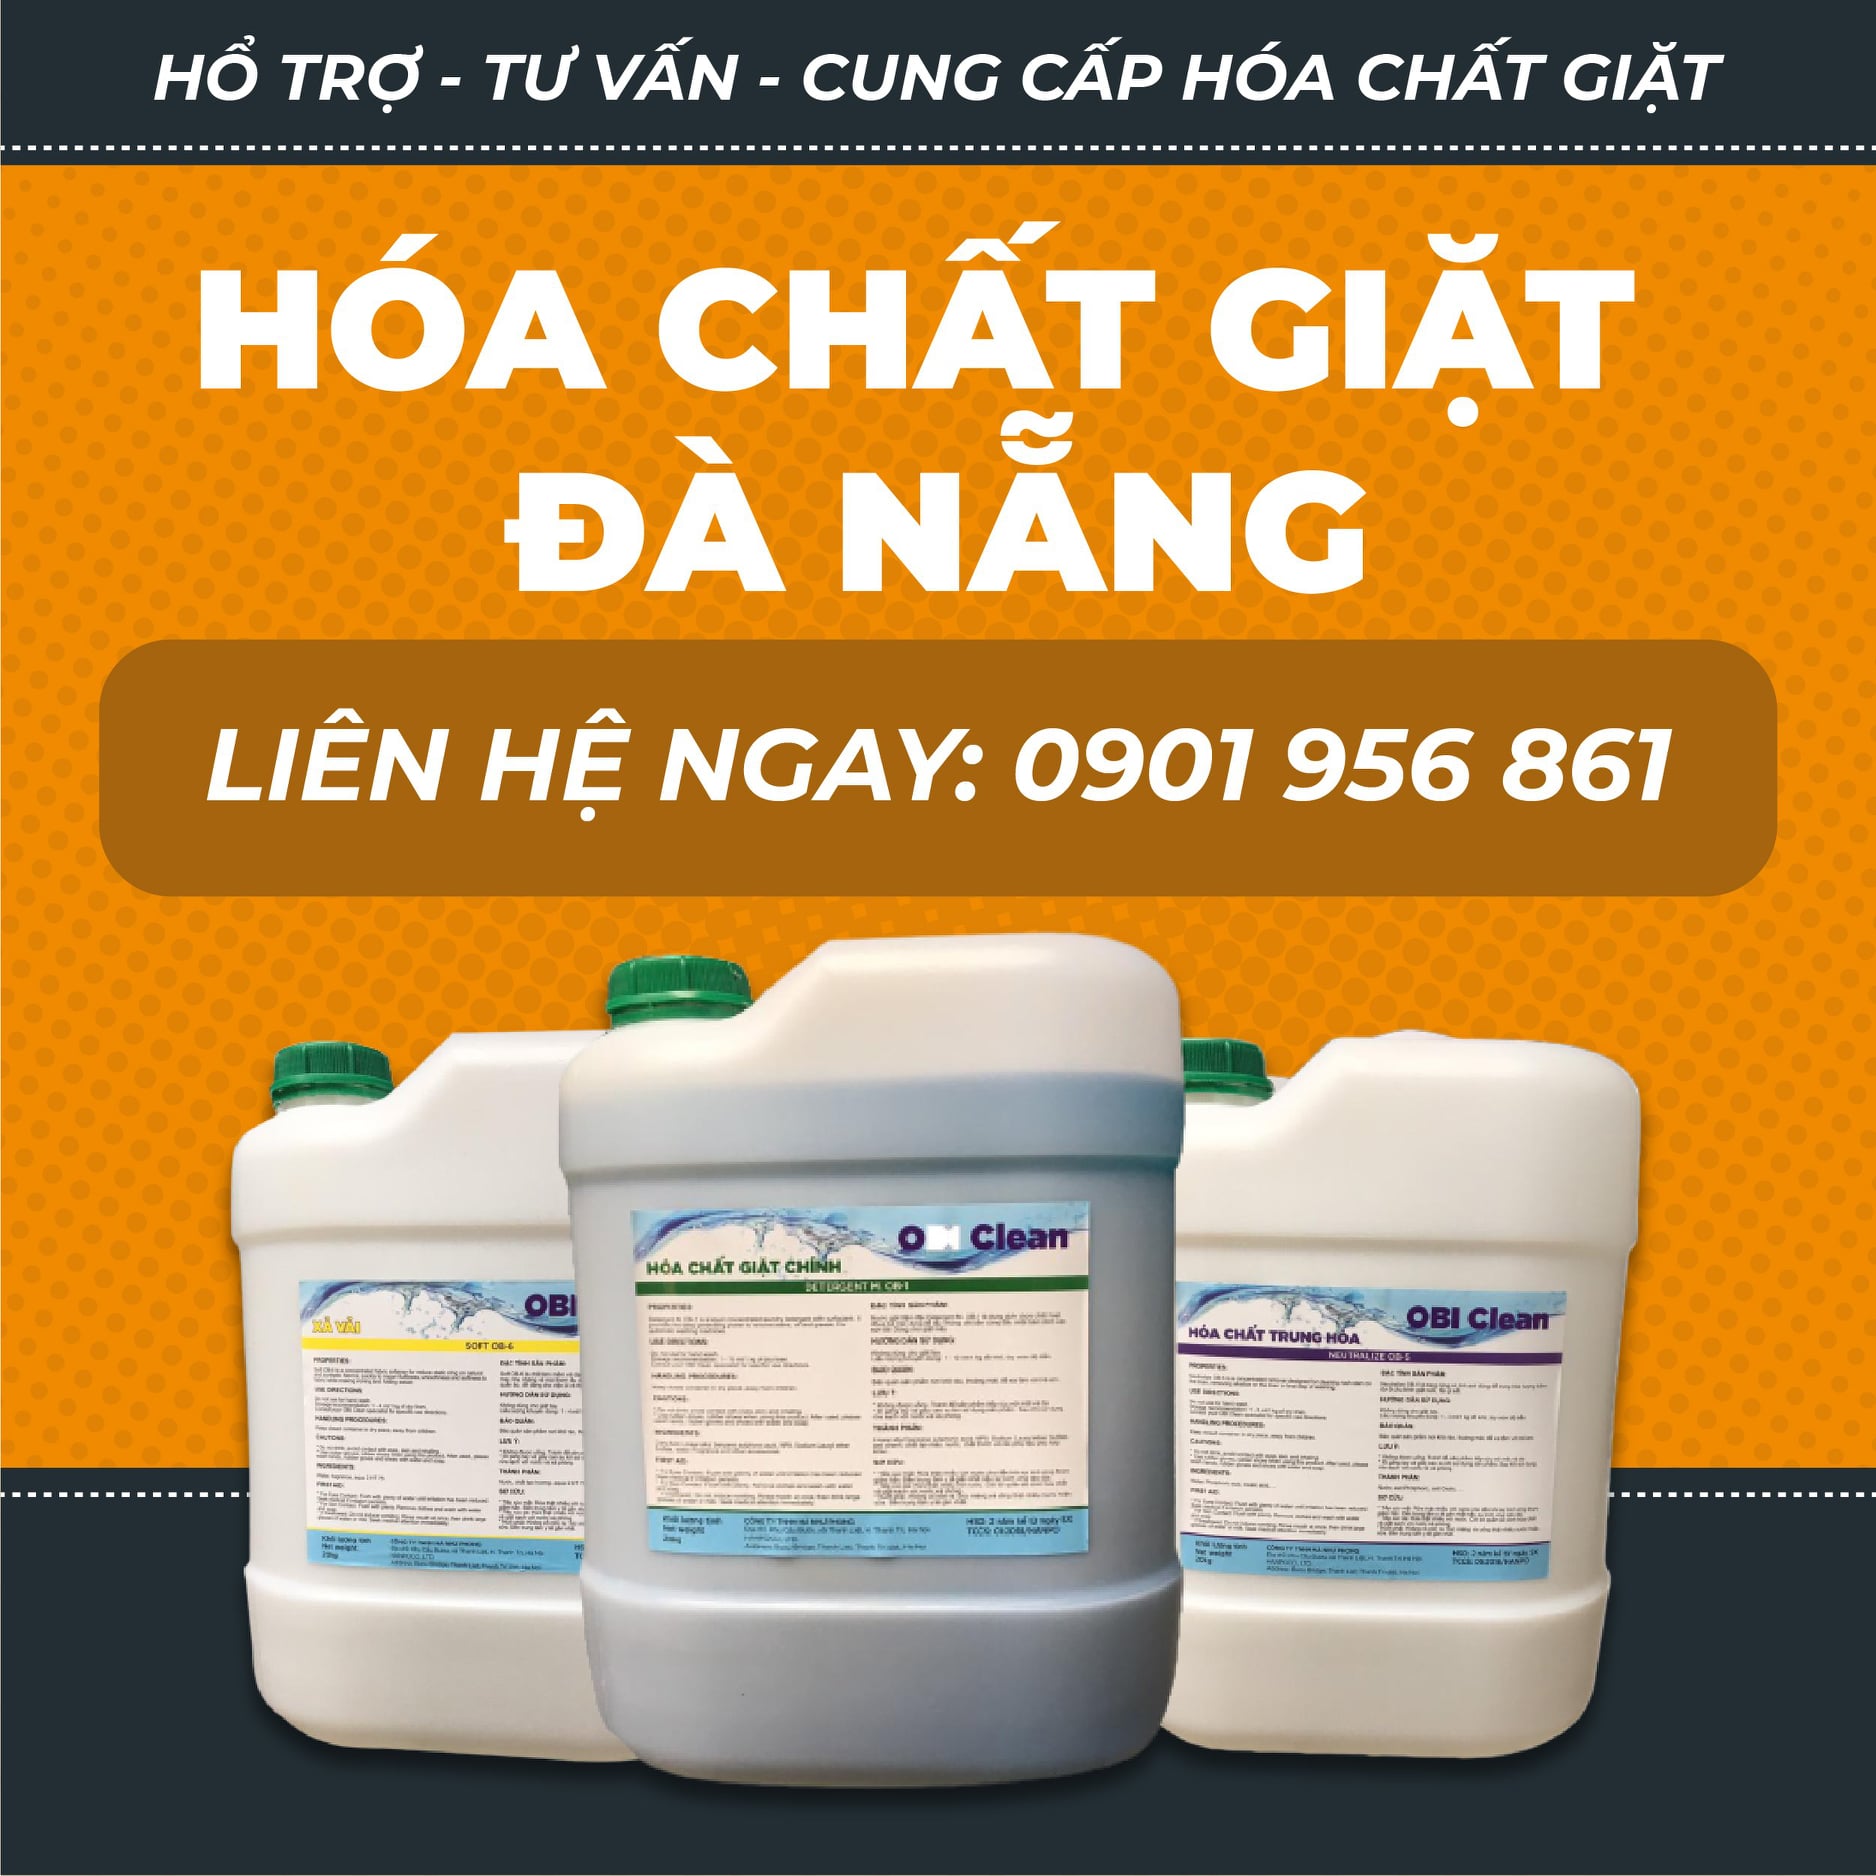 Cung cấp hóa chất công nghiệp Đà Nẵng